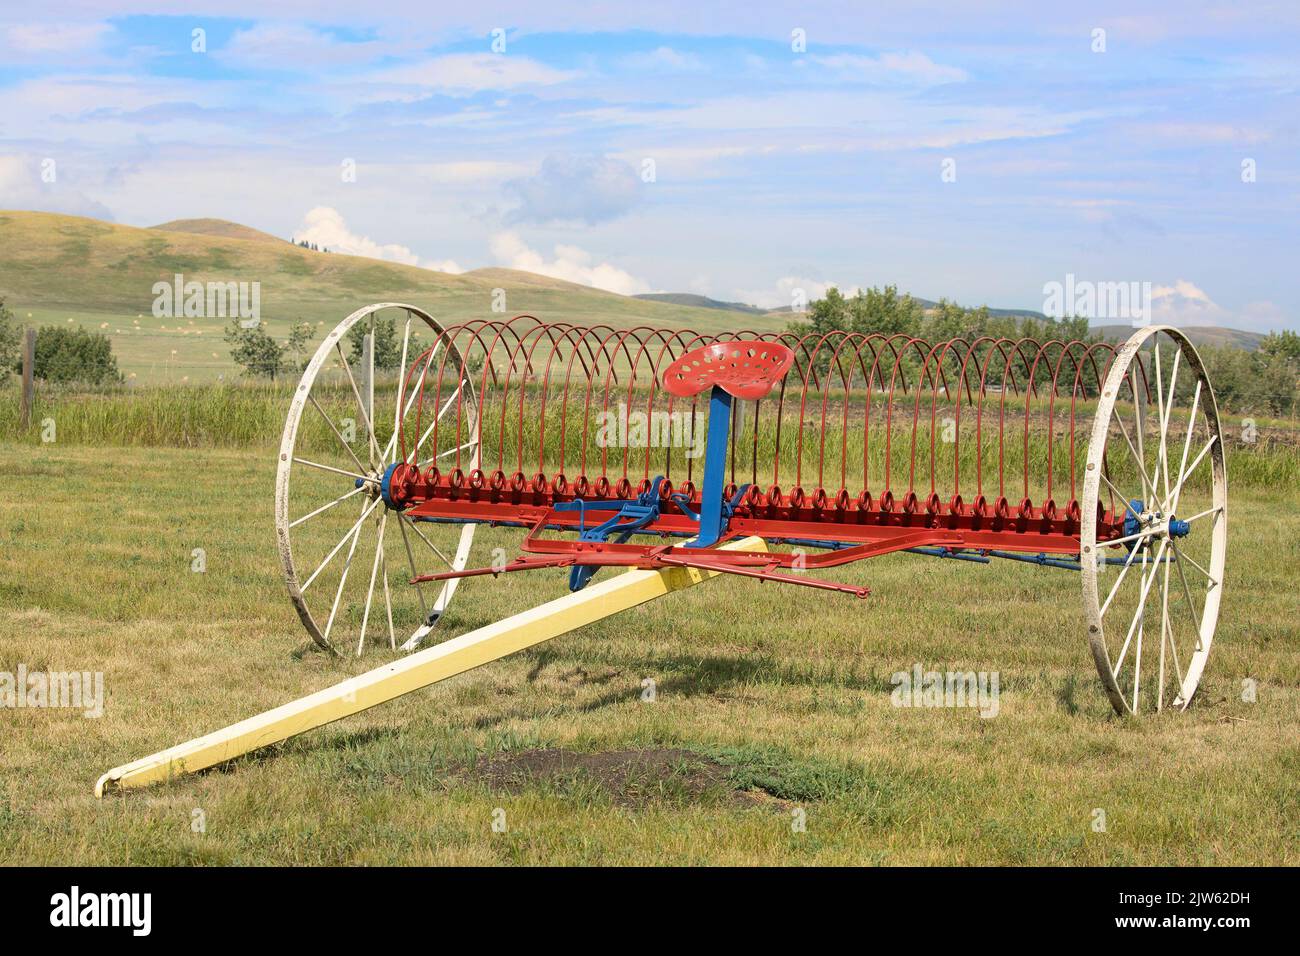 Coltivatore d'epoca in un campo del sito storico nazionale Bar U Ranch, Alberta meridionale, Canada. Foto Stock